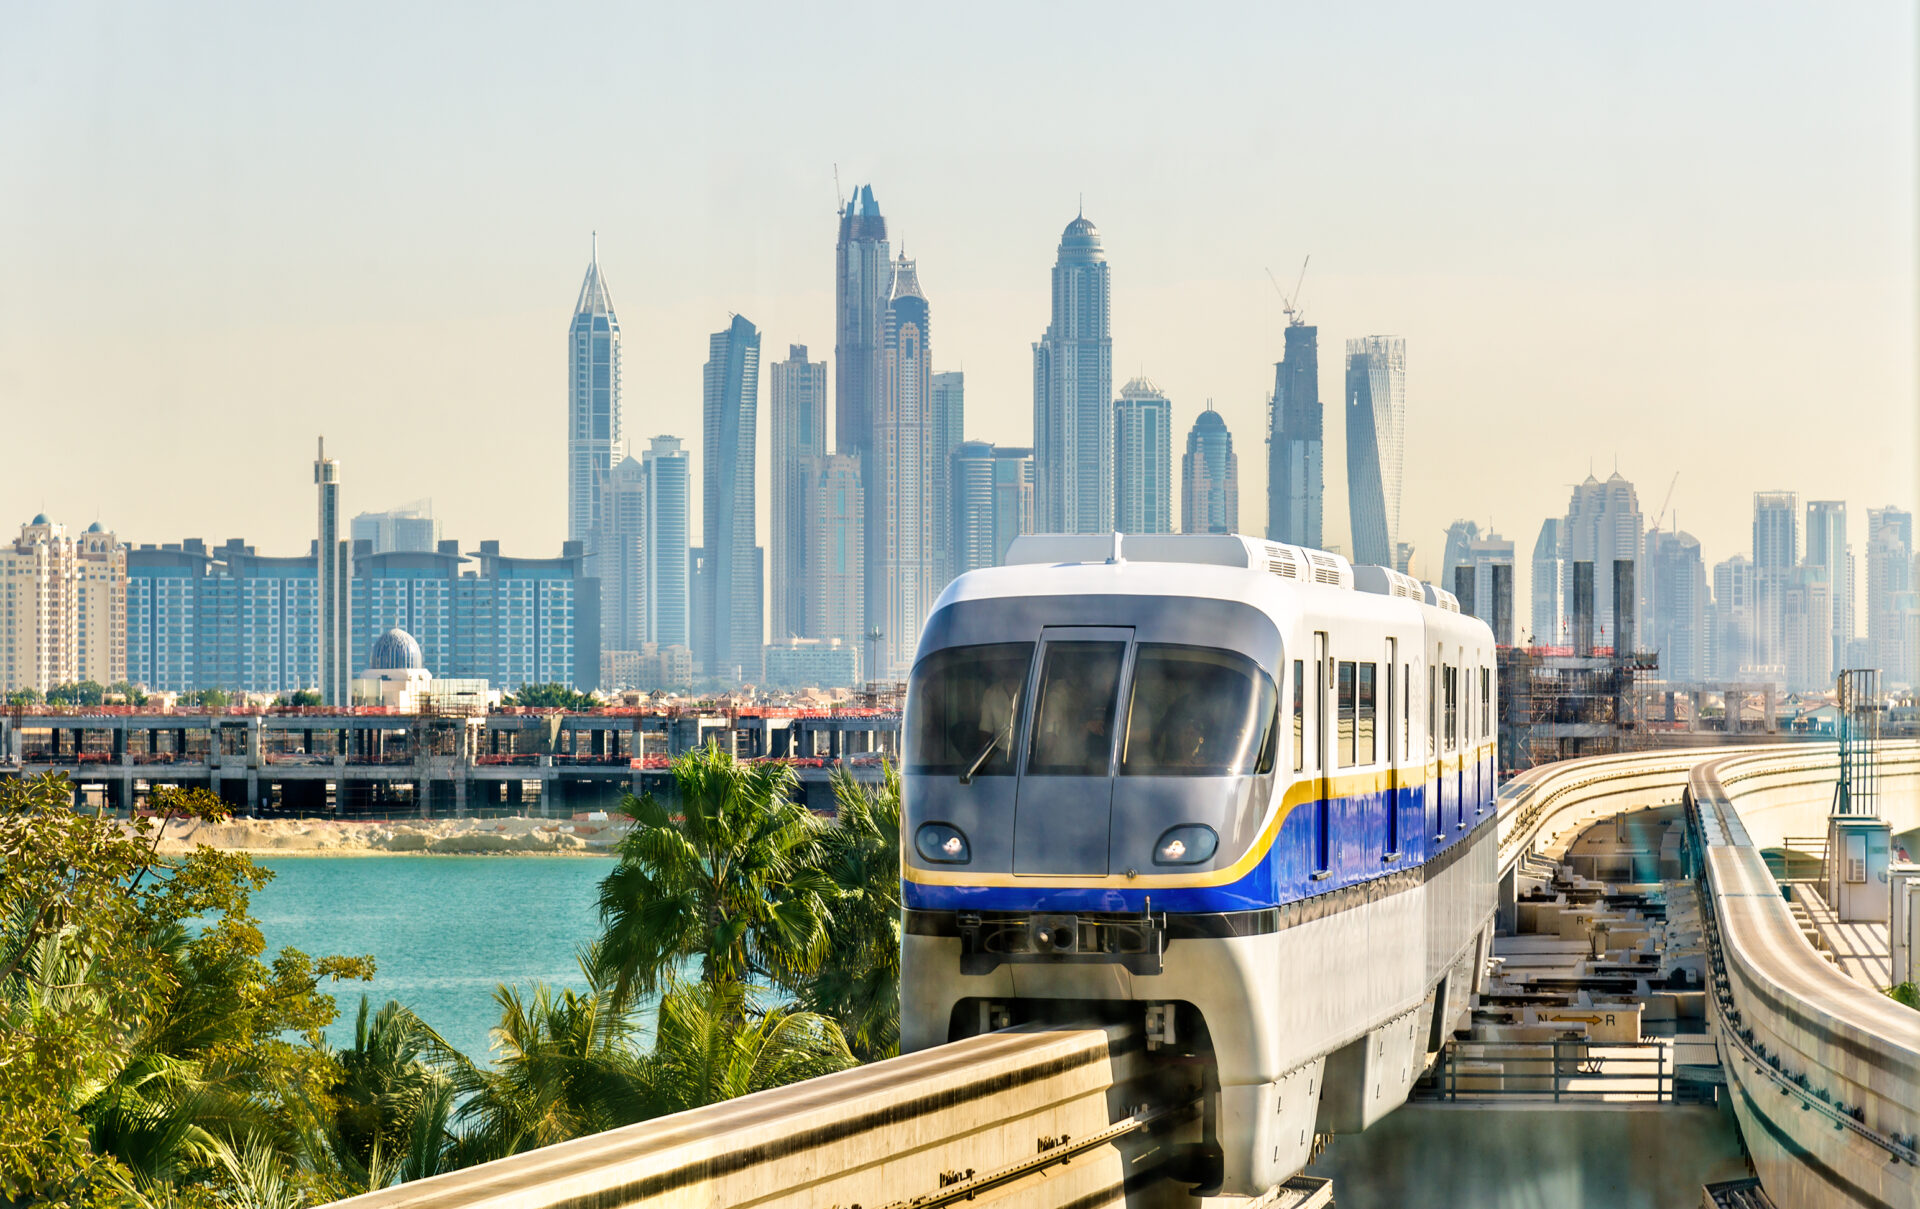 Palm Monorail in Dubai - Dubai skyline